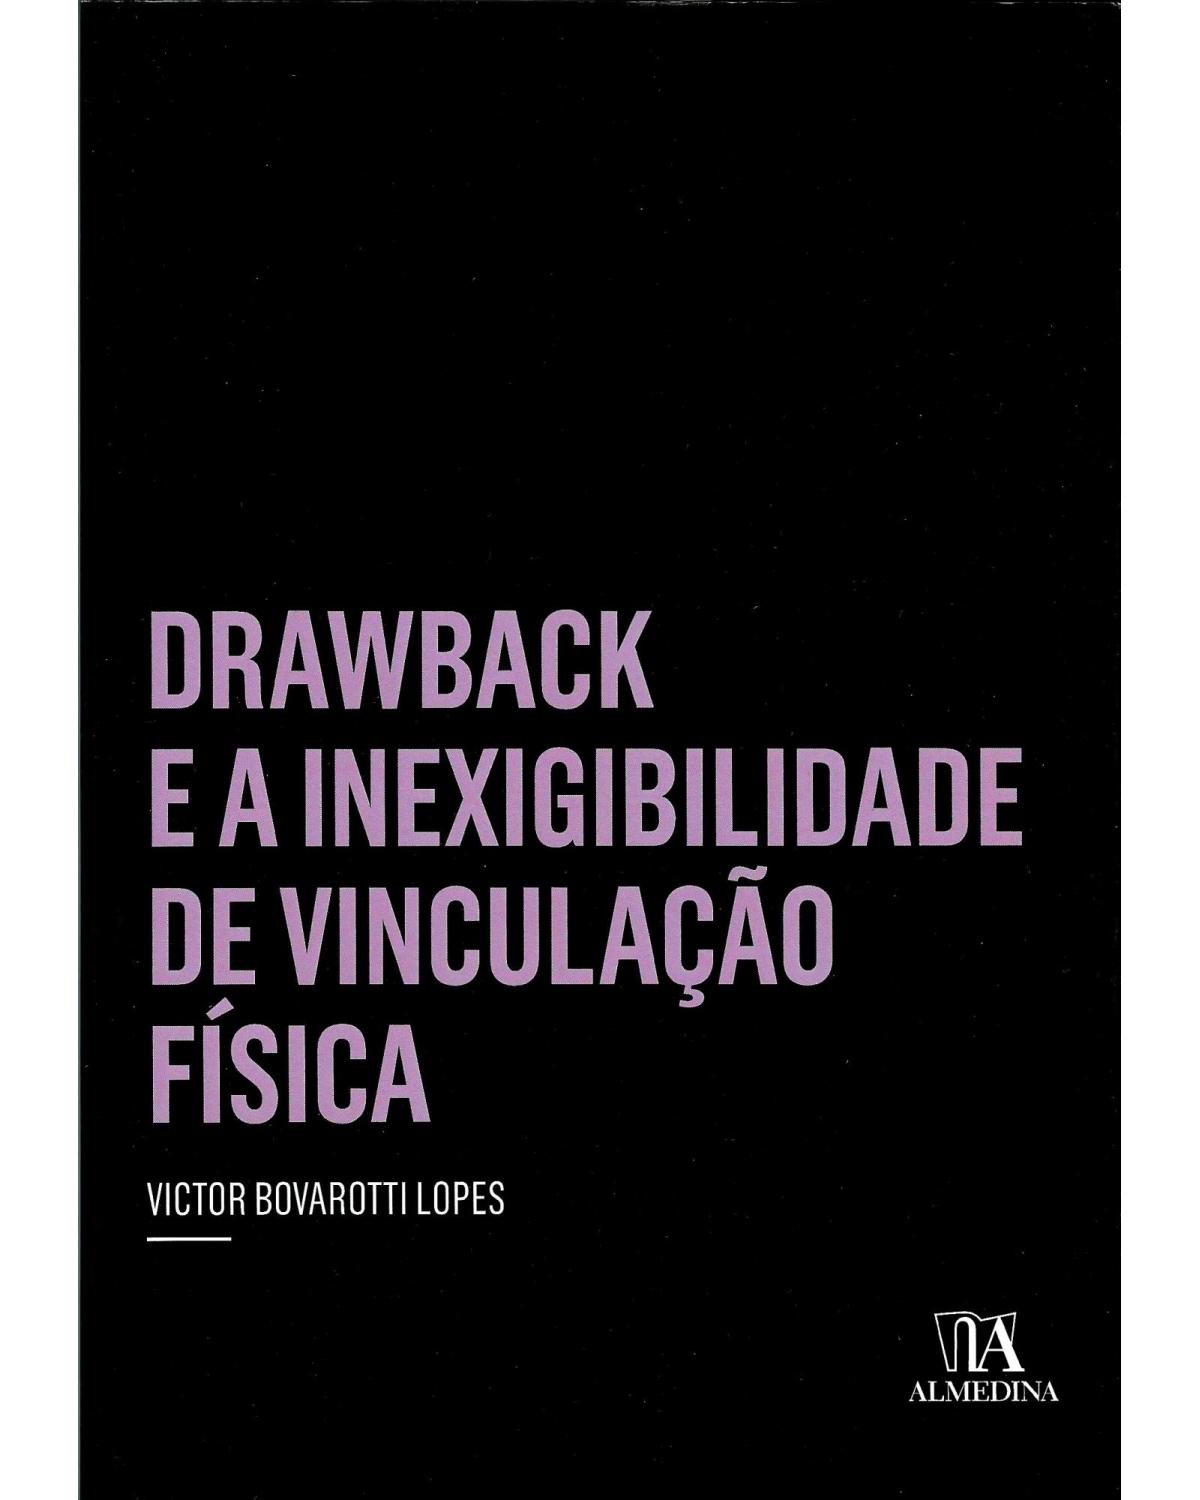 Drawback e a inexigibilidade de vinculação física - 1ª Edição | 2012